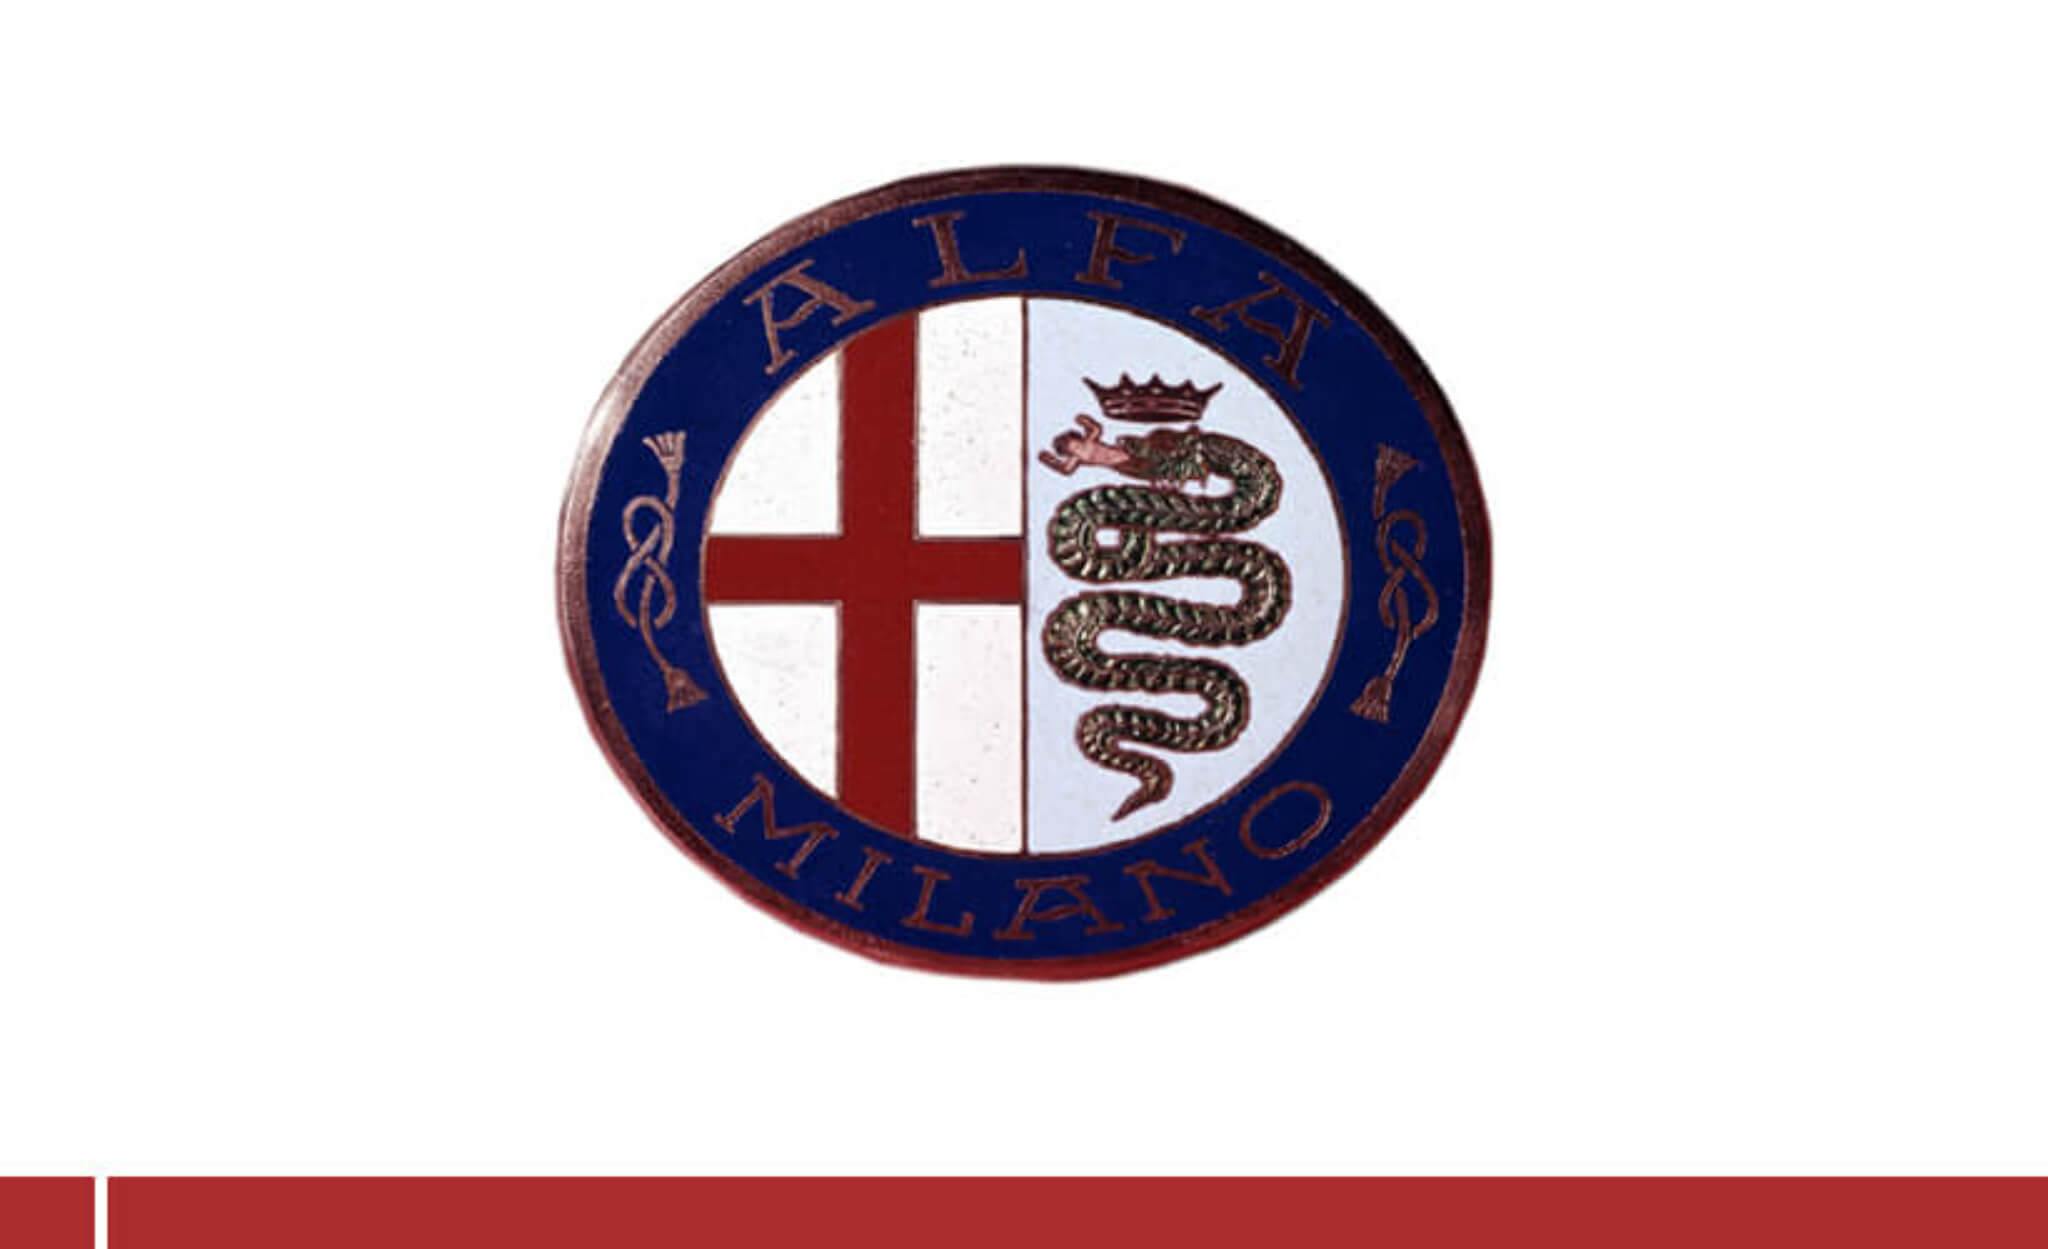 Primeiro Logótipo da Alfa Romeo em 1910: O dragão Biscione do lado direito, o emblema da cidade de Milão do esquerdo, com a cruz de São Jorge vermelha sobre um fundo branco; e o anel azulado com a inscrição "Alfa Milano" a representar, por sua vez, a Família Real.